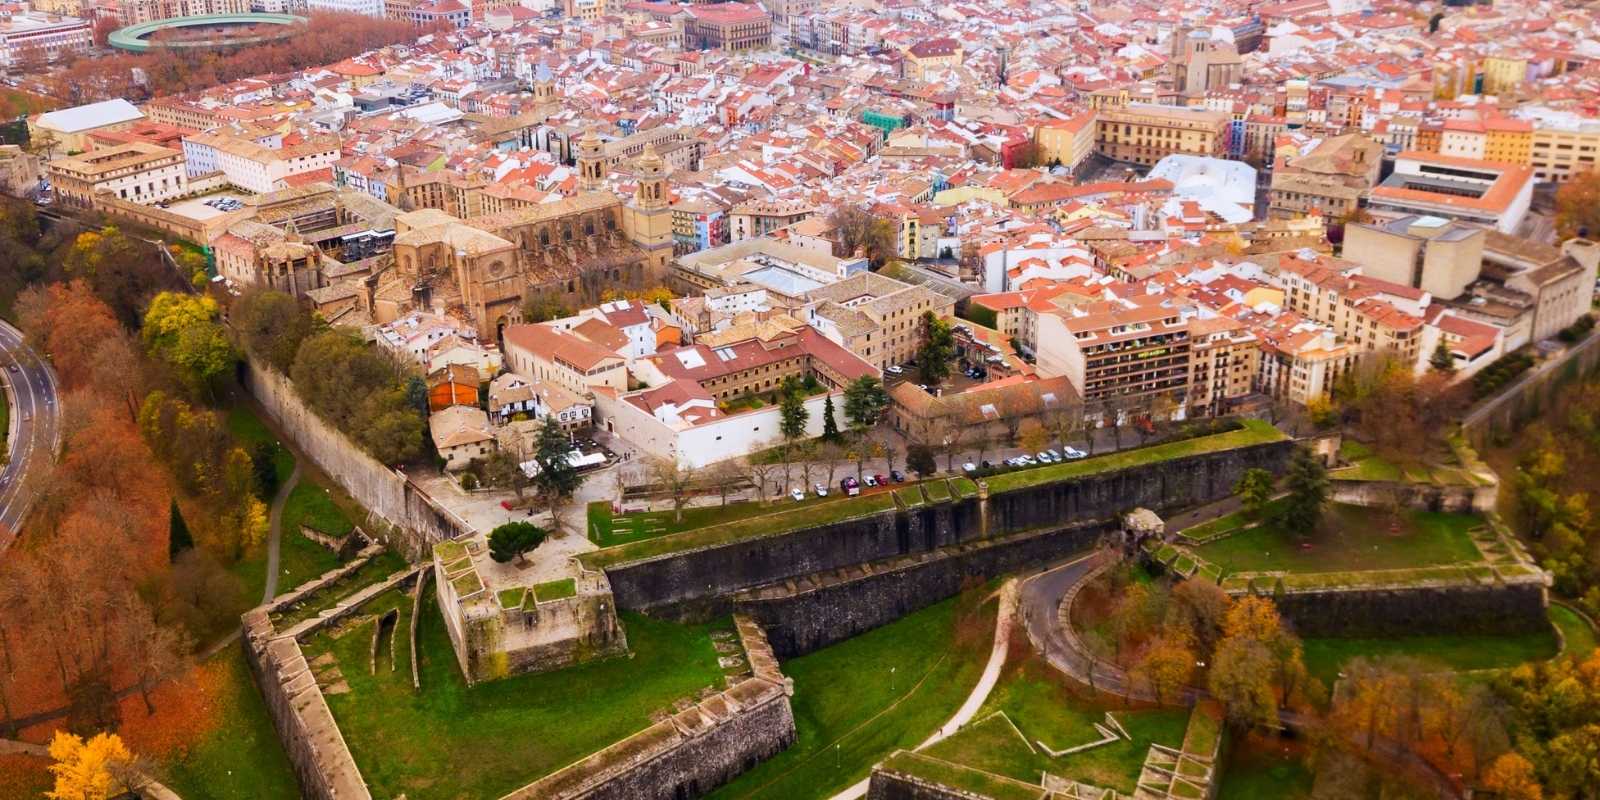 Pamplona City Walls and Citadel